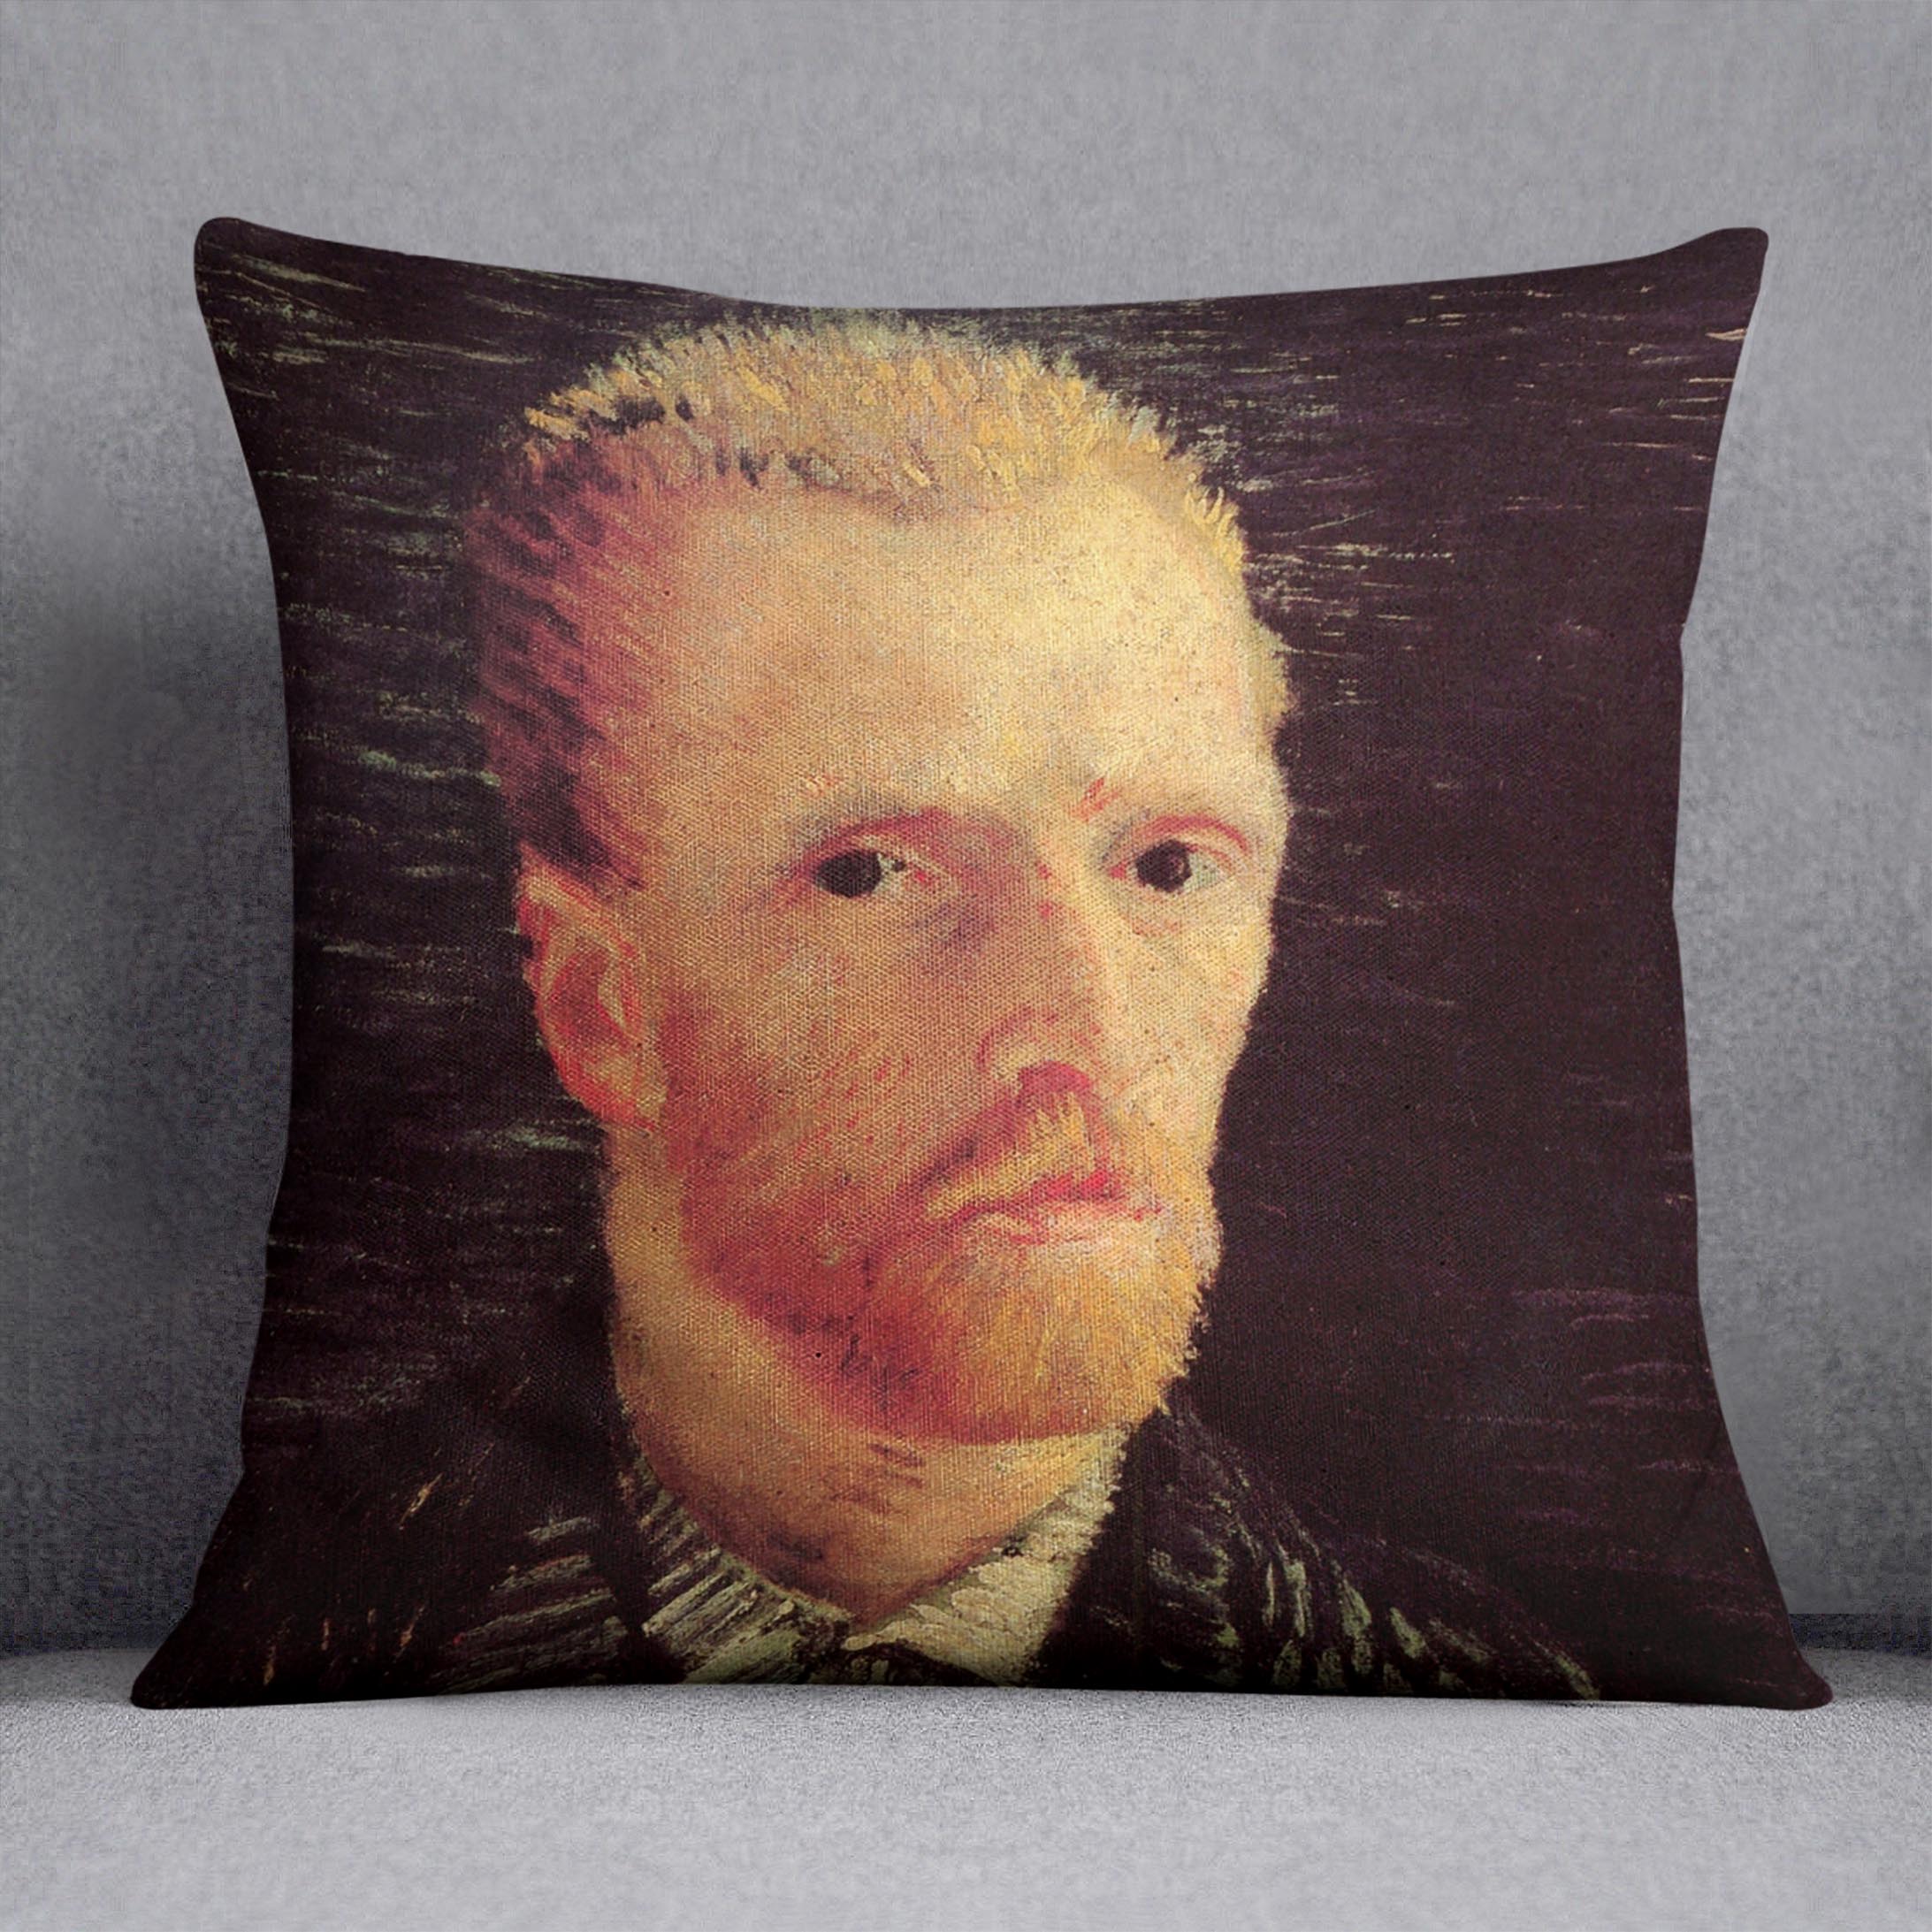 Self-Portrait 6 by Van Gogh Cushion